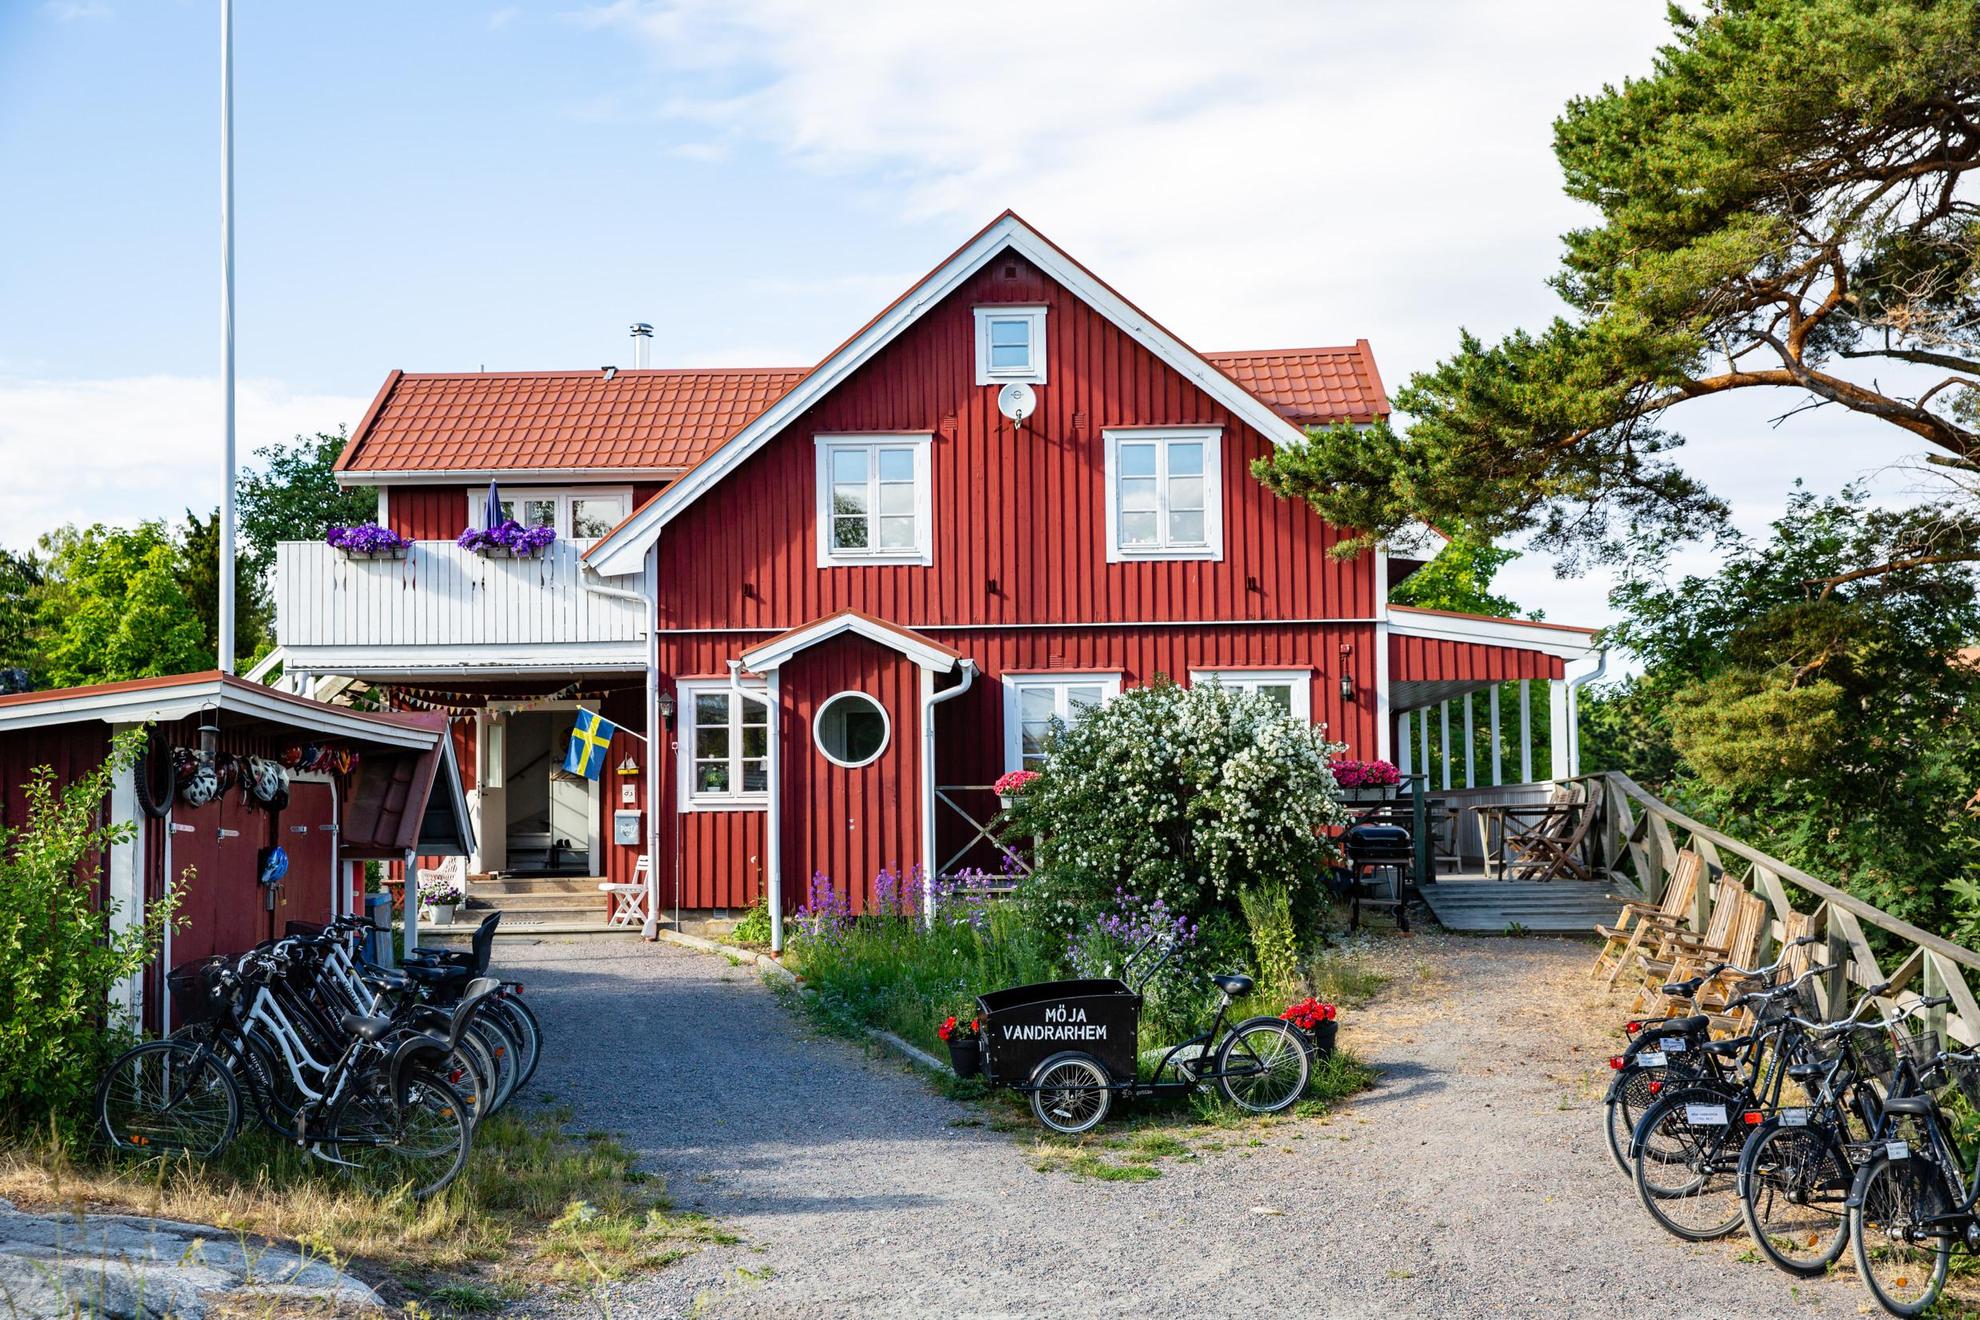 Une maison en bois rouge avec des bordures blanches en été. Il y a plusieurs vélos à l'extérieur de la maison. Sur l'un des vélos, il est écrit "Möja Vandrarhem".